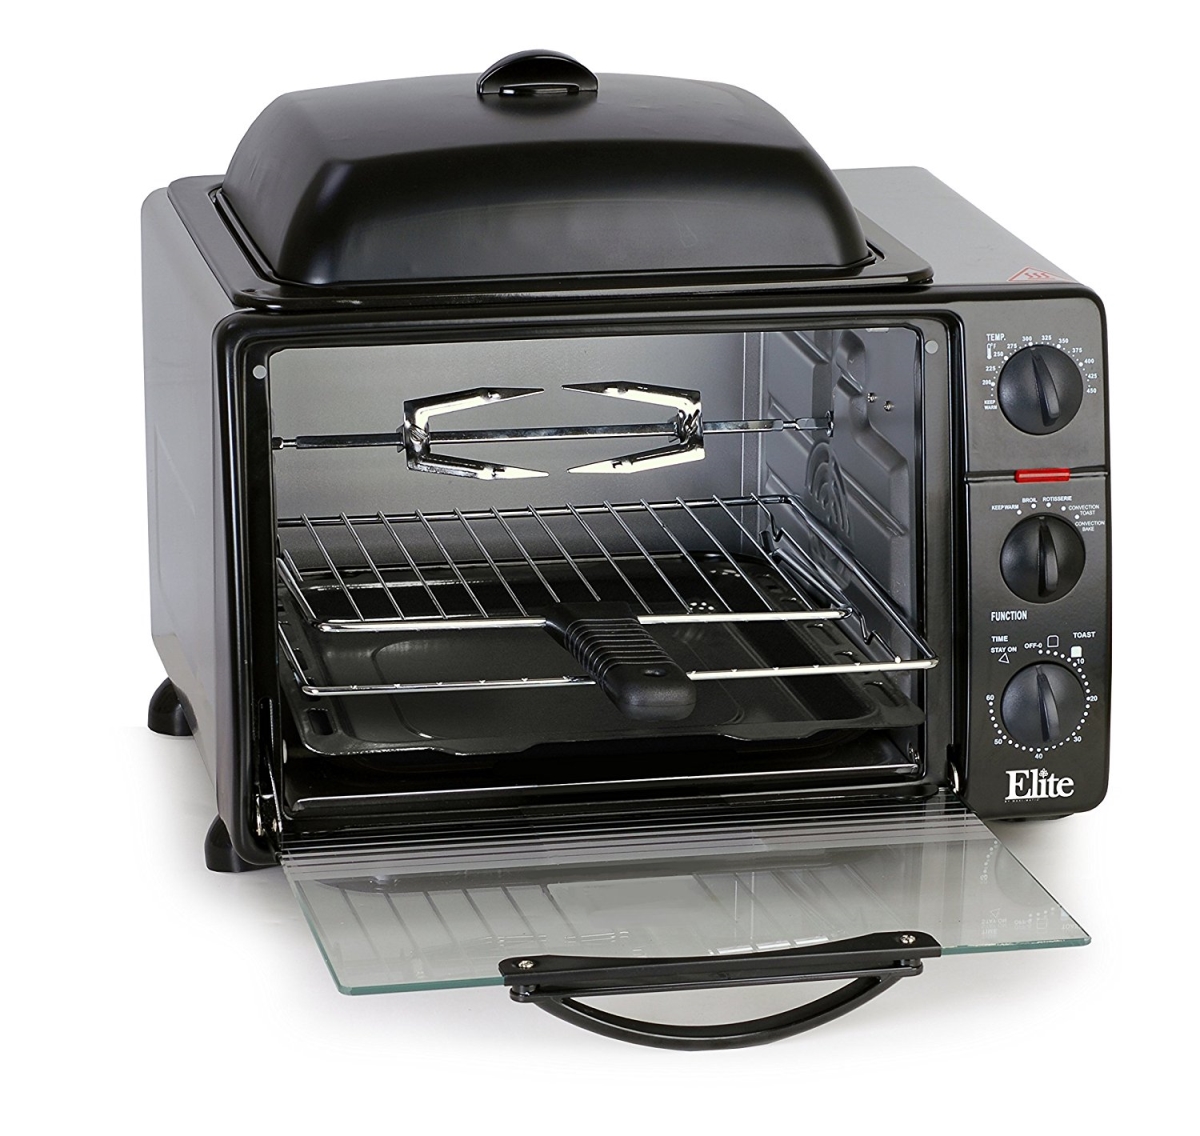 Maxi-matic Ero2008sc 1500w Platinum Toaster Oven With Rotisserie